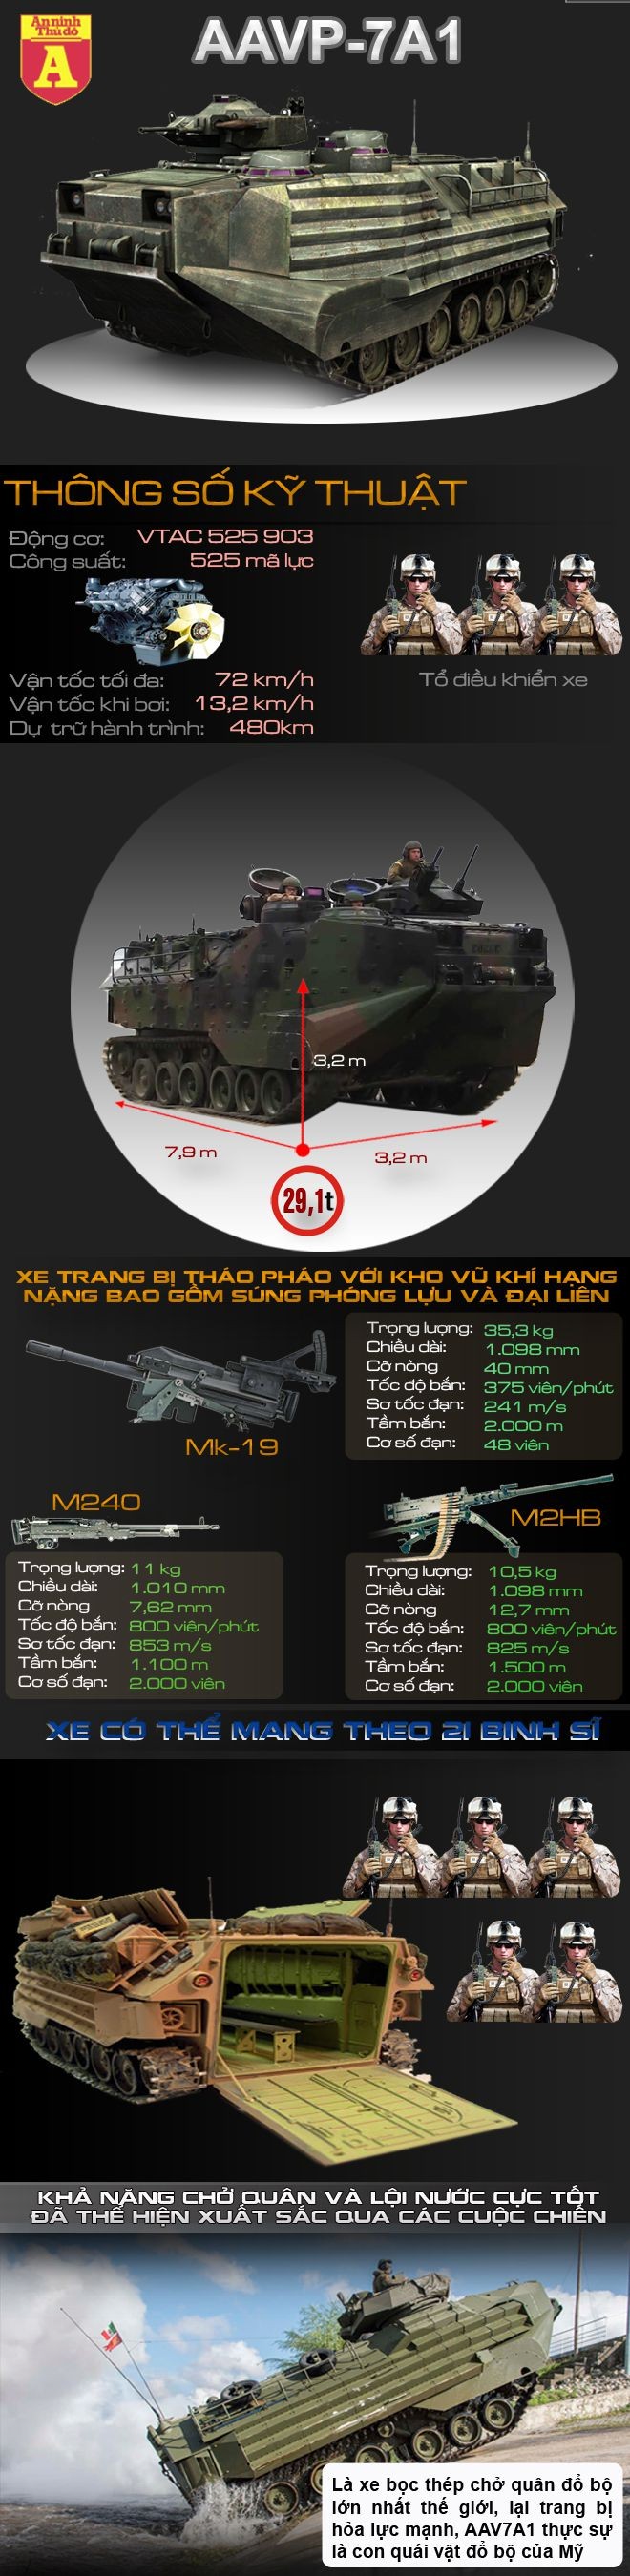 [Infographic] AAV7 A1 Con quái vật đổ bộ của lực lượng phòng vệ Nhật Bản ảnh 1